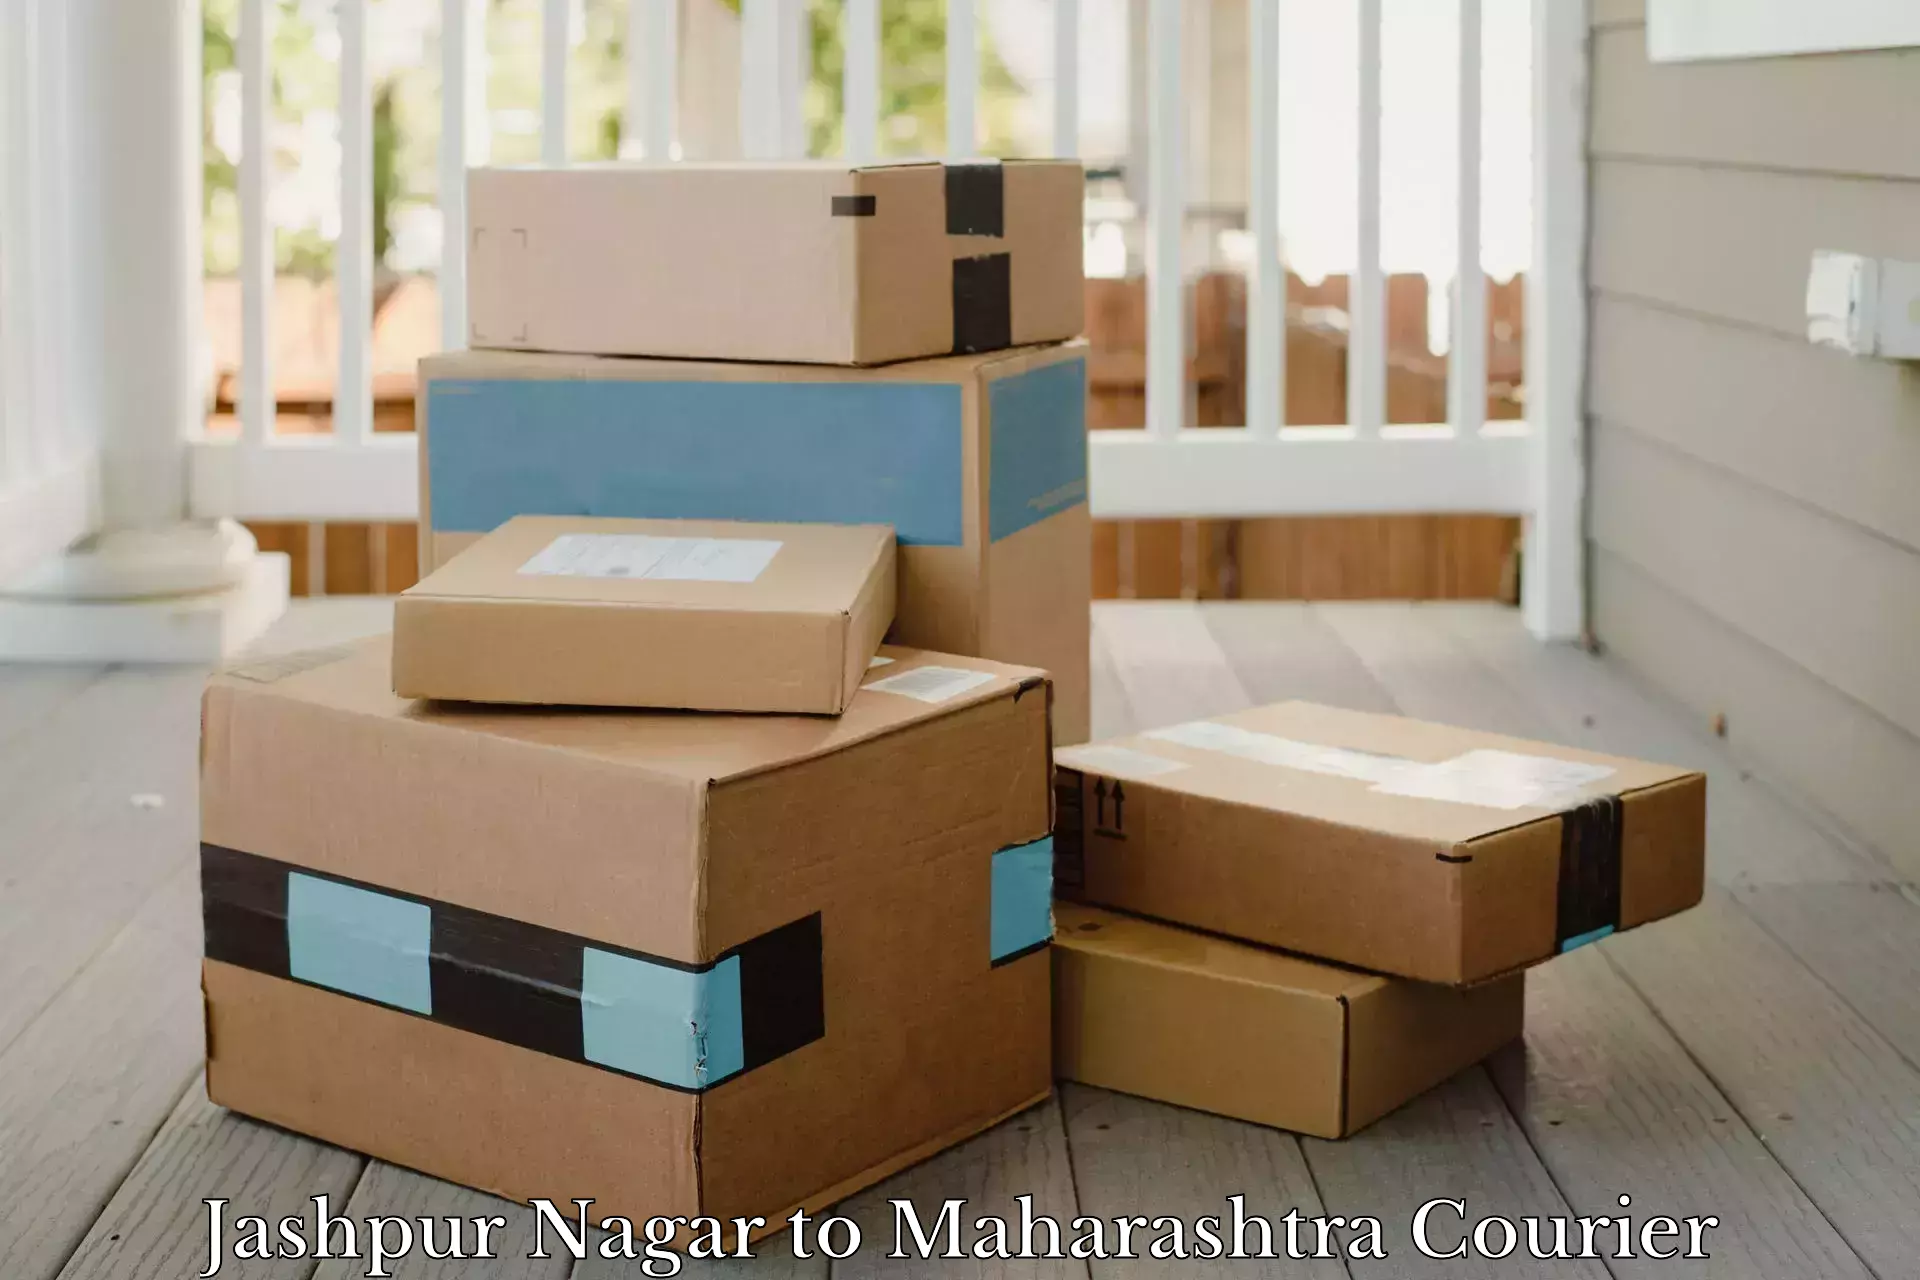 High-priority parcel service Jashpur Nagar to Maharashtra